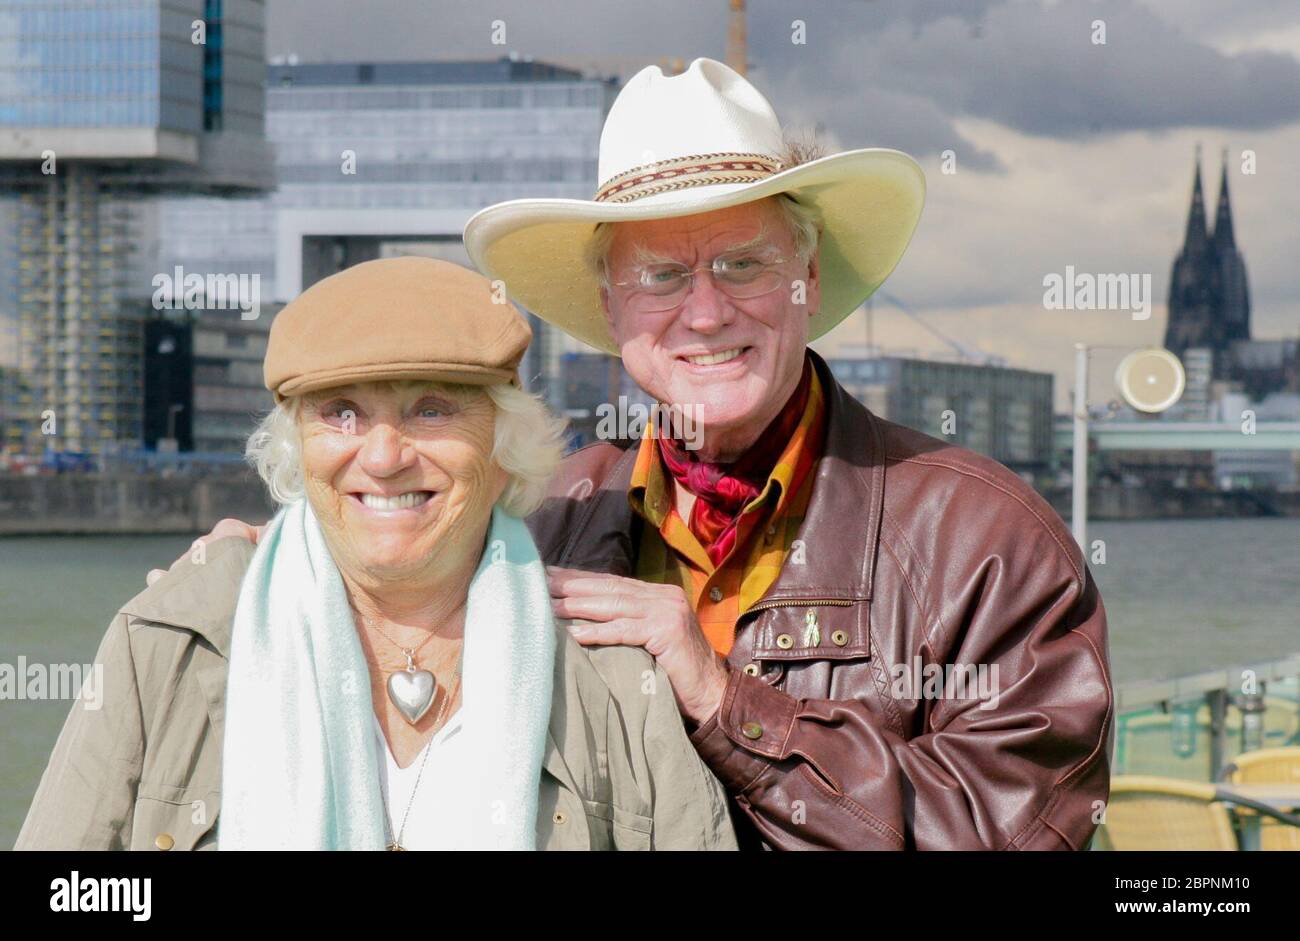 Larry Hagman - Rundfahrt auf dem Rhein - der US-amerikanische Schauspieler Larry Hagman alias J. R. Ewing (Dallas) und seine Ehefrau Maj Axelsson zu Besuch in Köln. Rundfahrt mit einem KD Schiff auf dem Rhein. Stockfoto